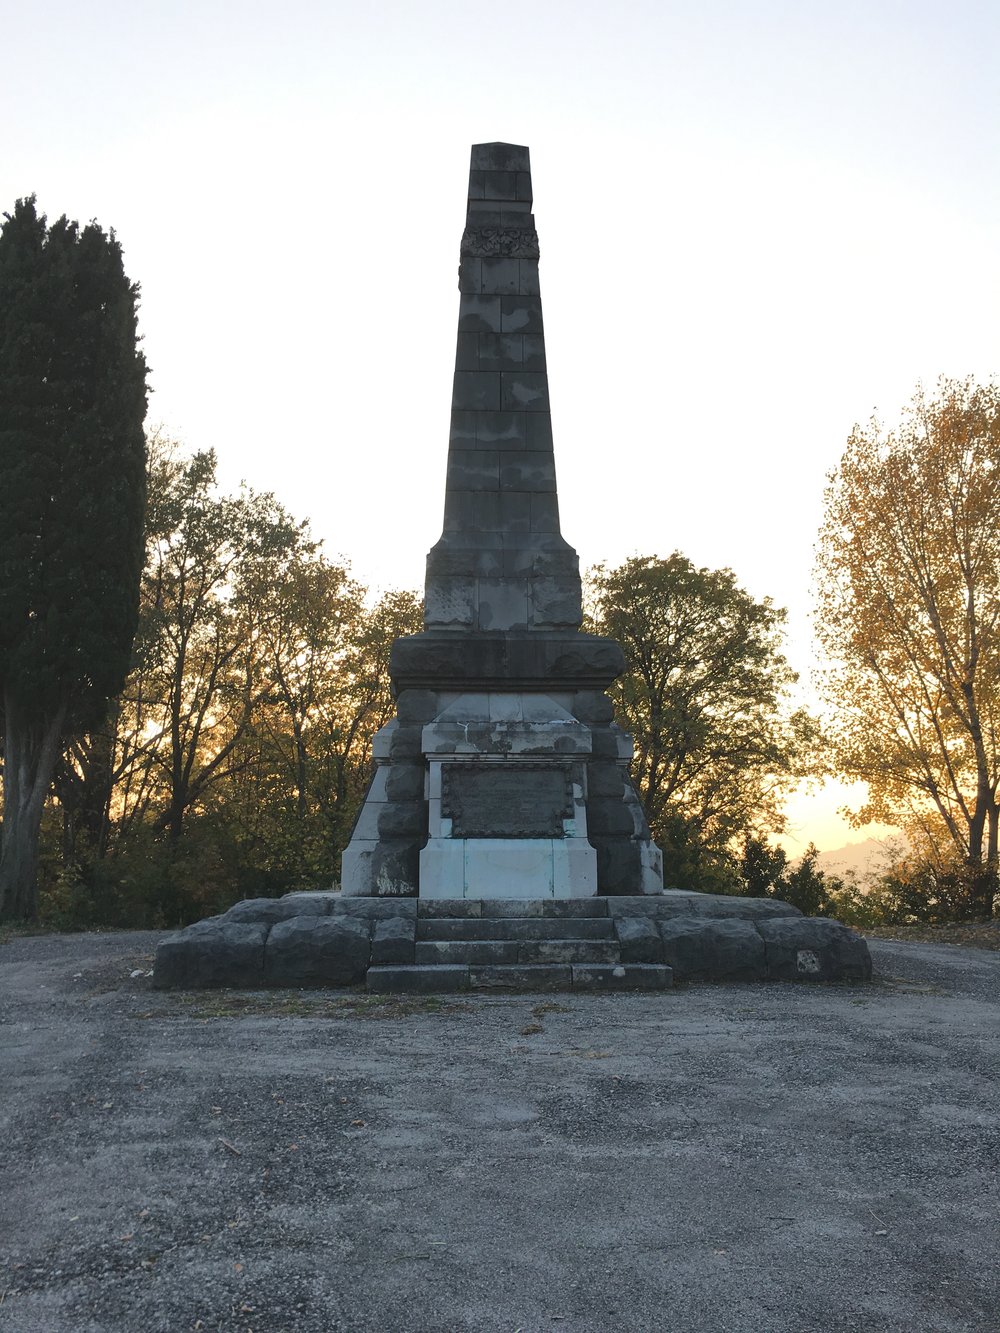 Obelisco 4 generali